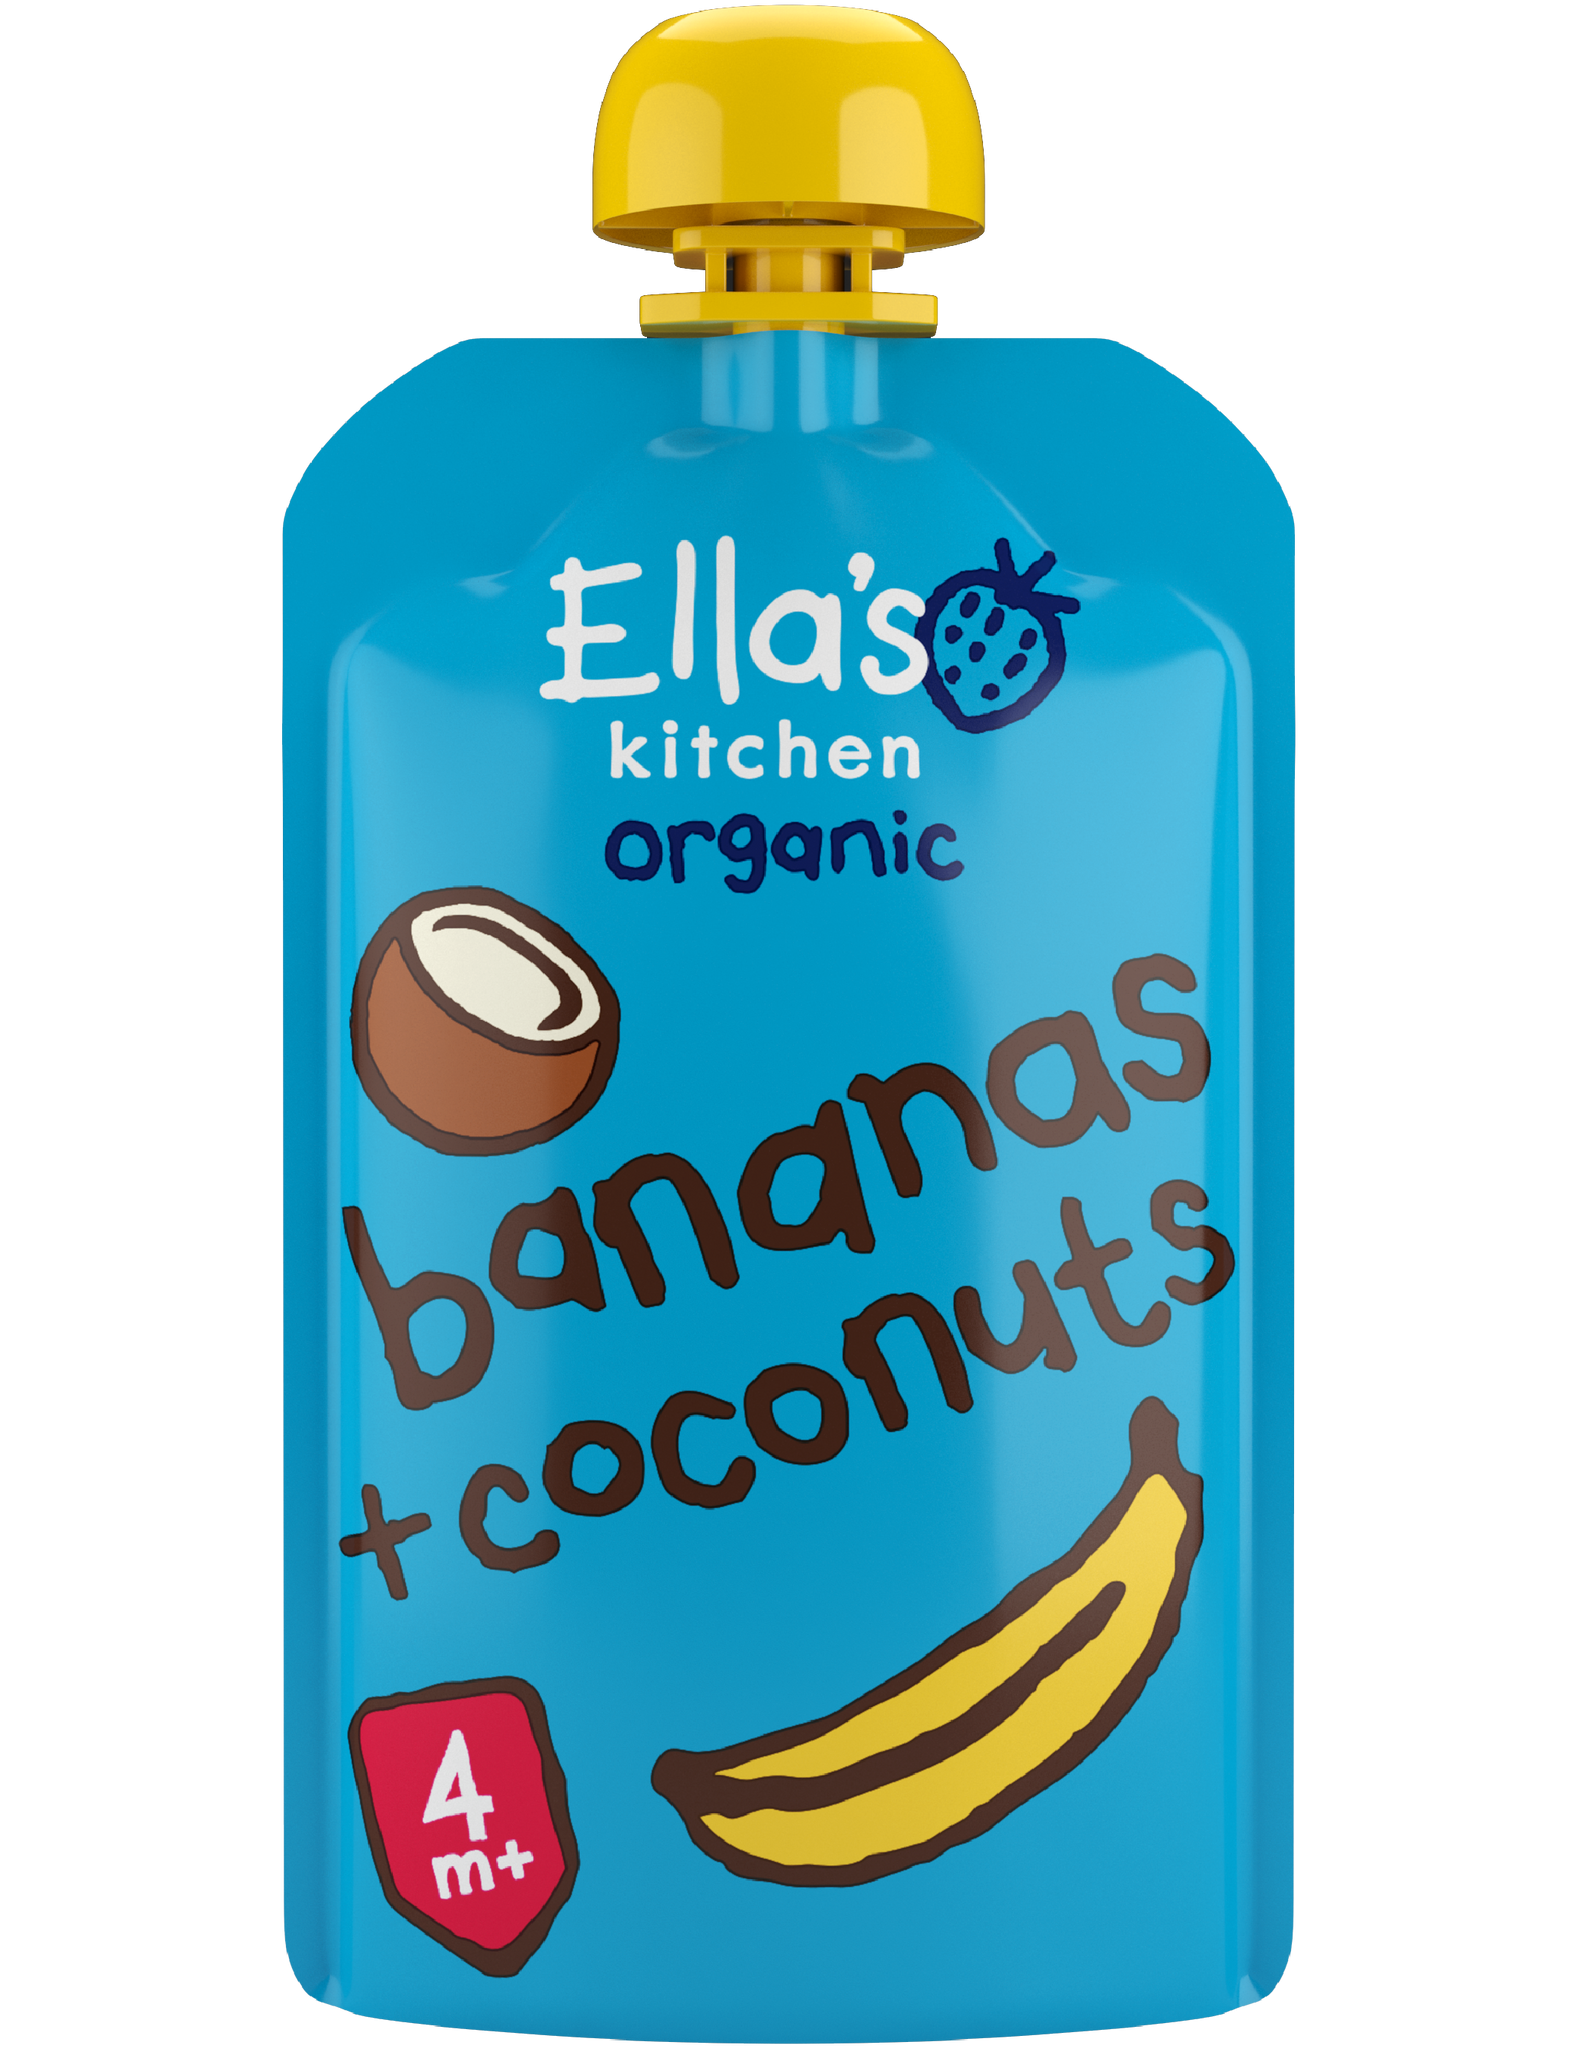 Bananas + coconuts